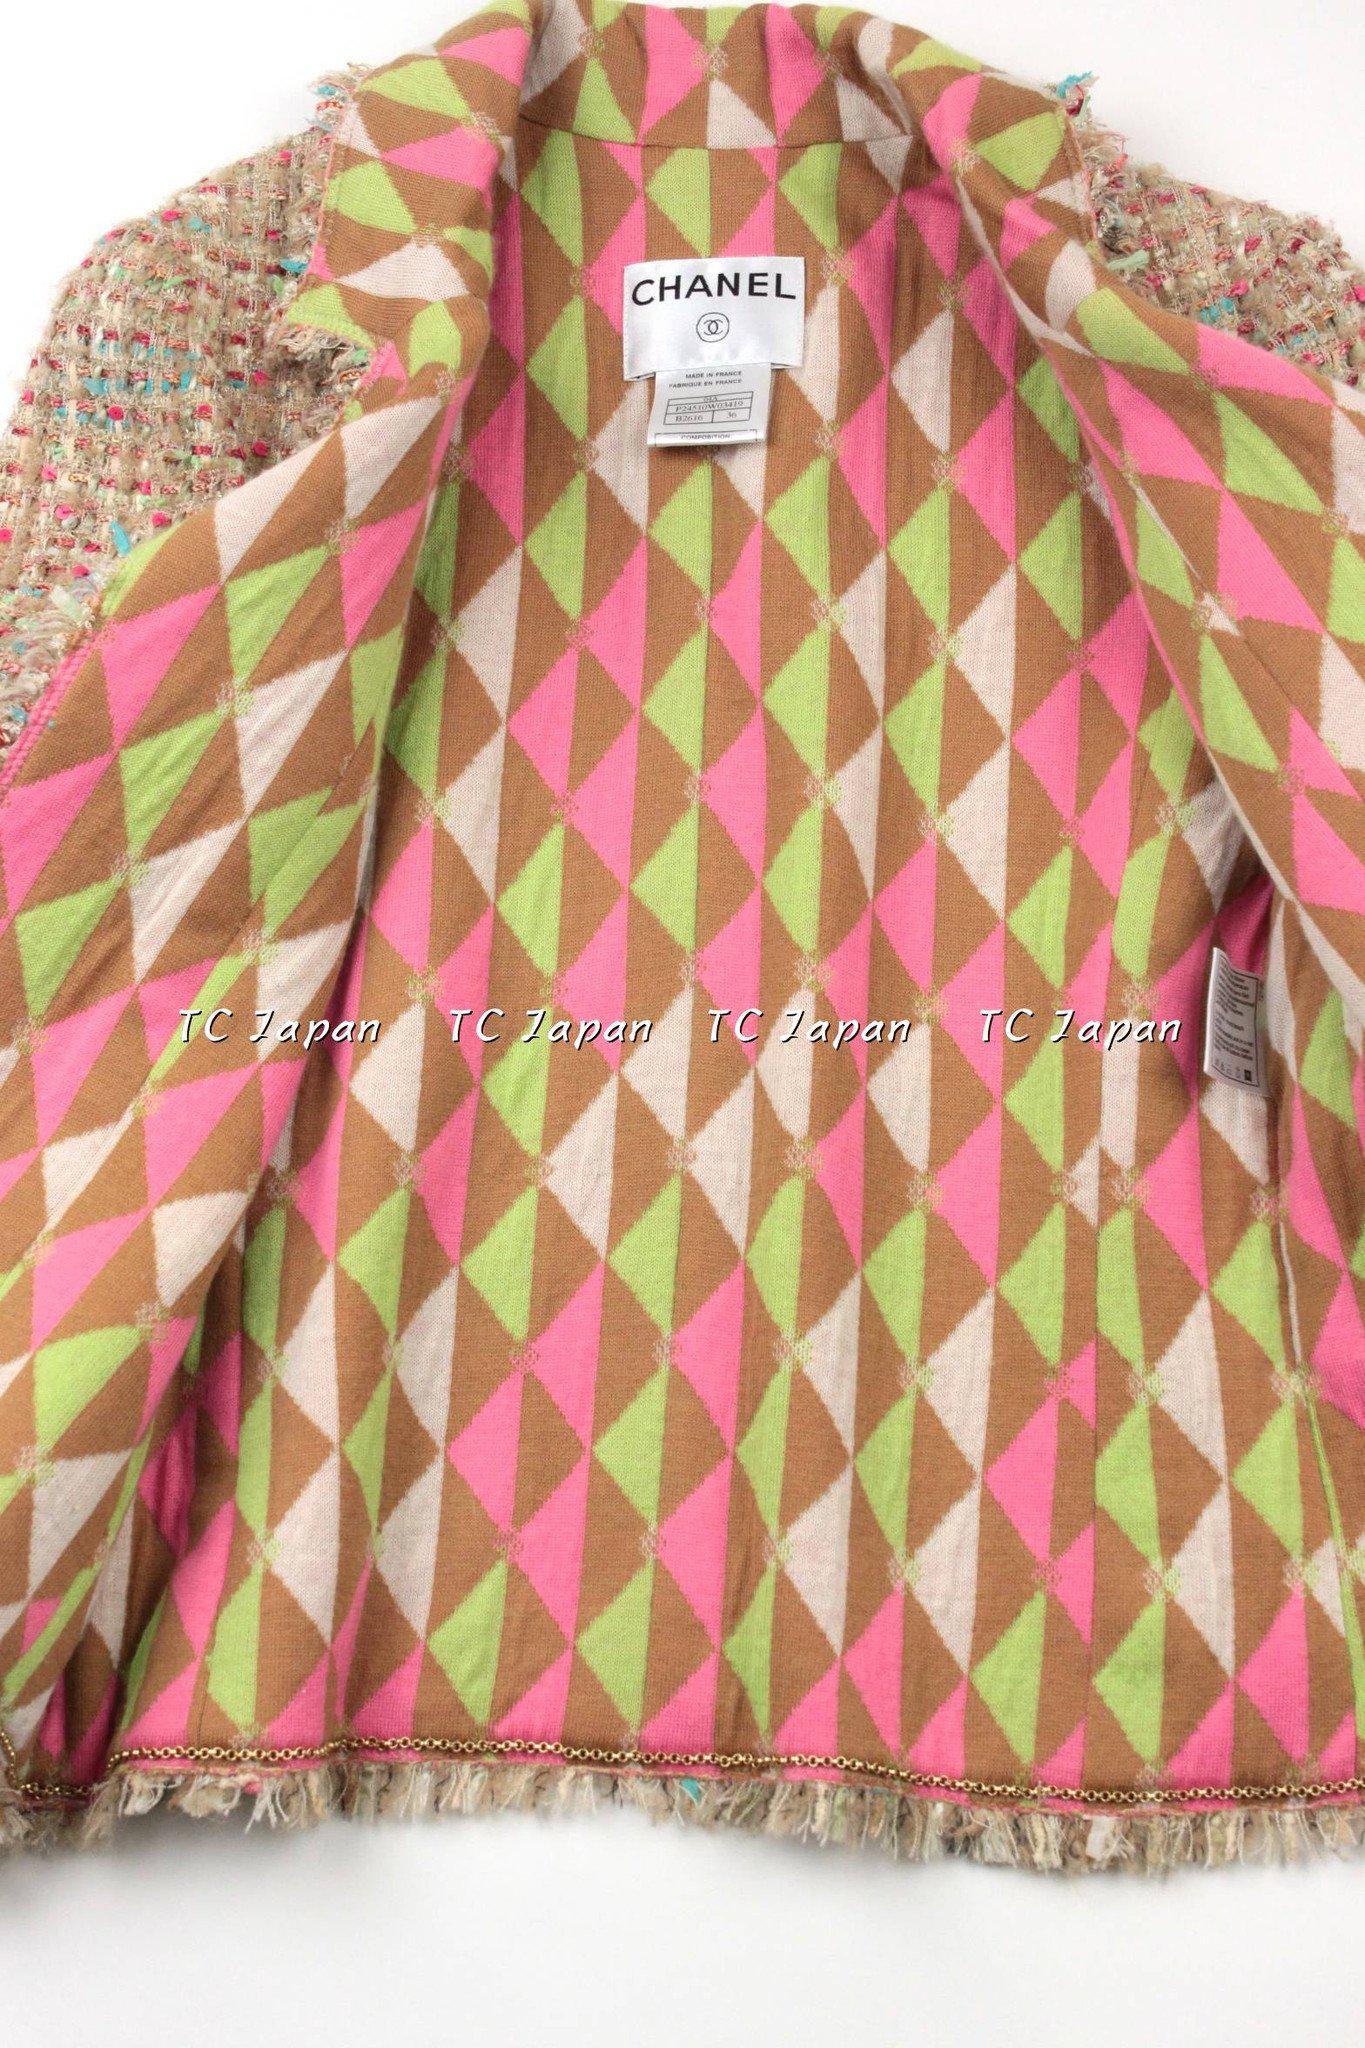 CHANEL 04A Multi Color Lesage Jacket Cashmere Lining Skirt Suit 34 36 38 シャネル ベージュ・ツイード・ジャケット・スカート・スーツ 即発 - CHANEL TC JAPAN